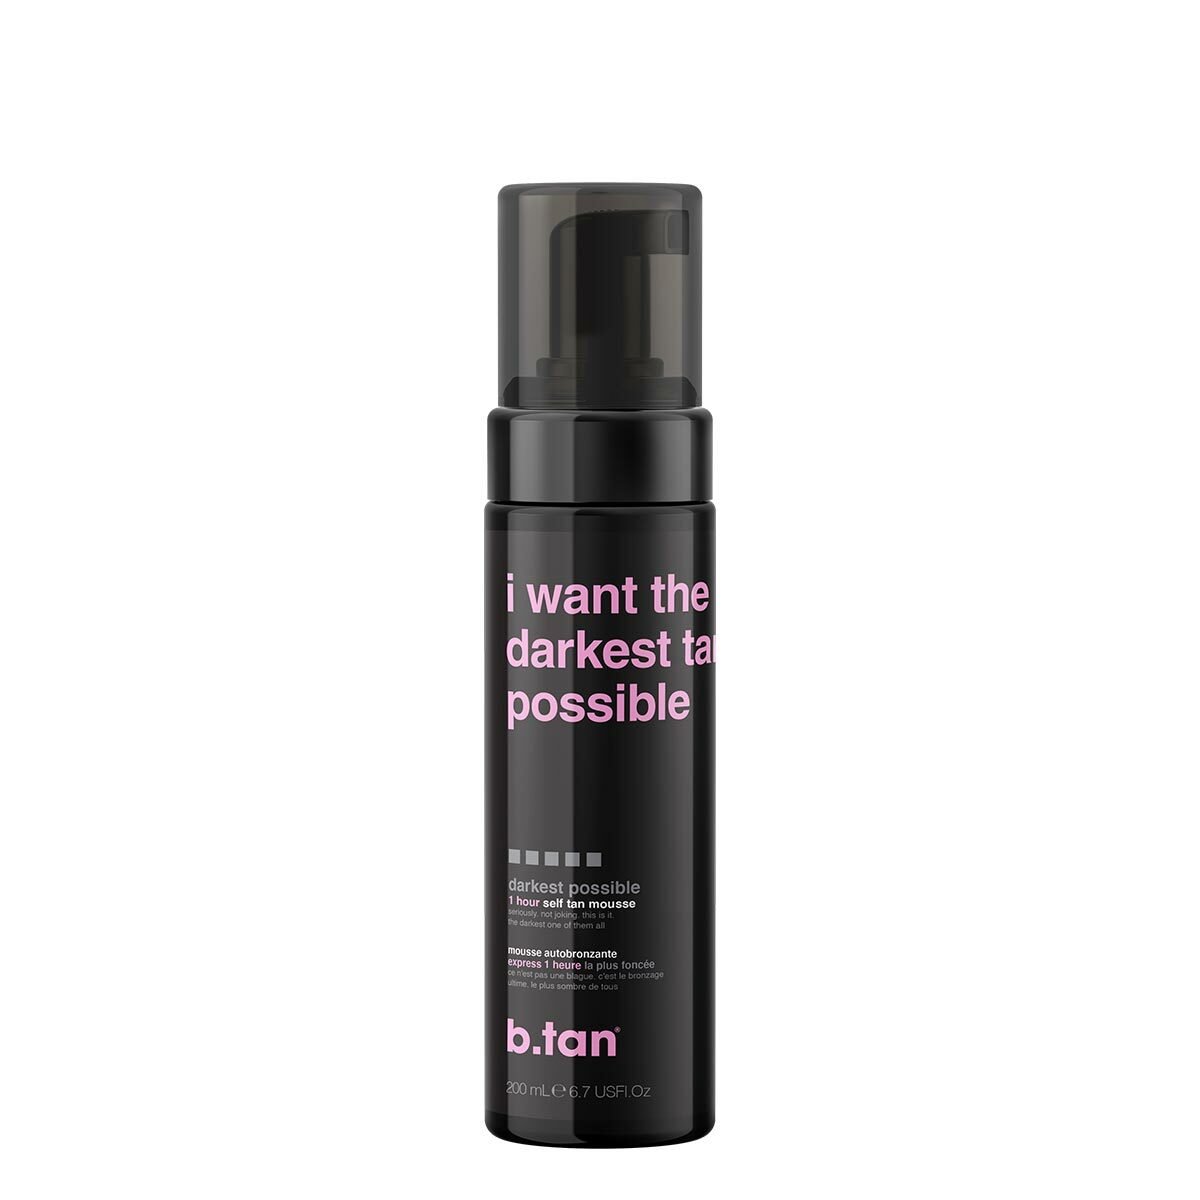 b.tan I Want The Darkest Tan Possible Self Tan Mousse 200 ml